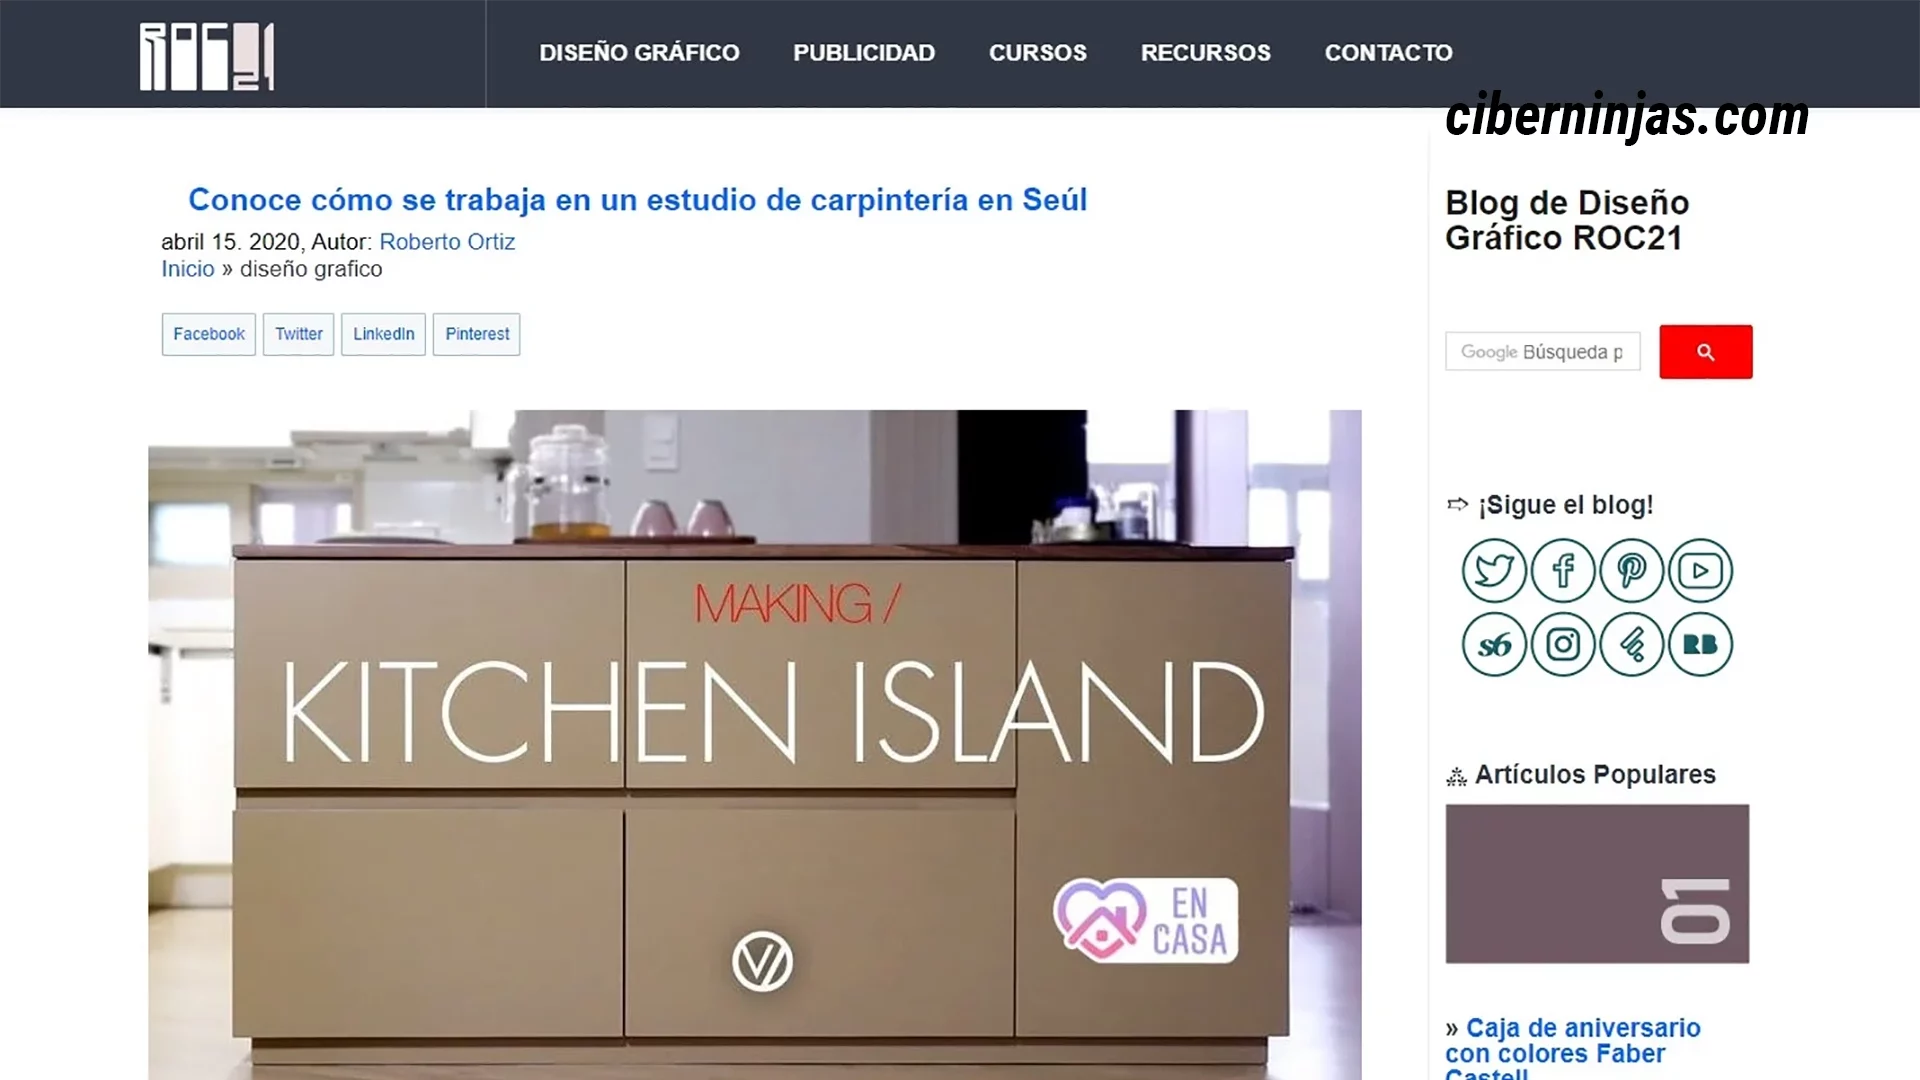 Roc21: Uno de los mejores blogs de diseño en español